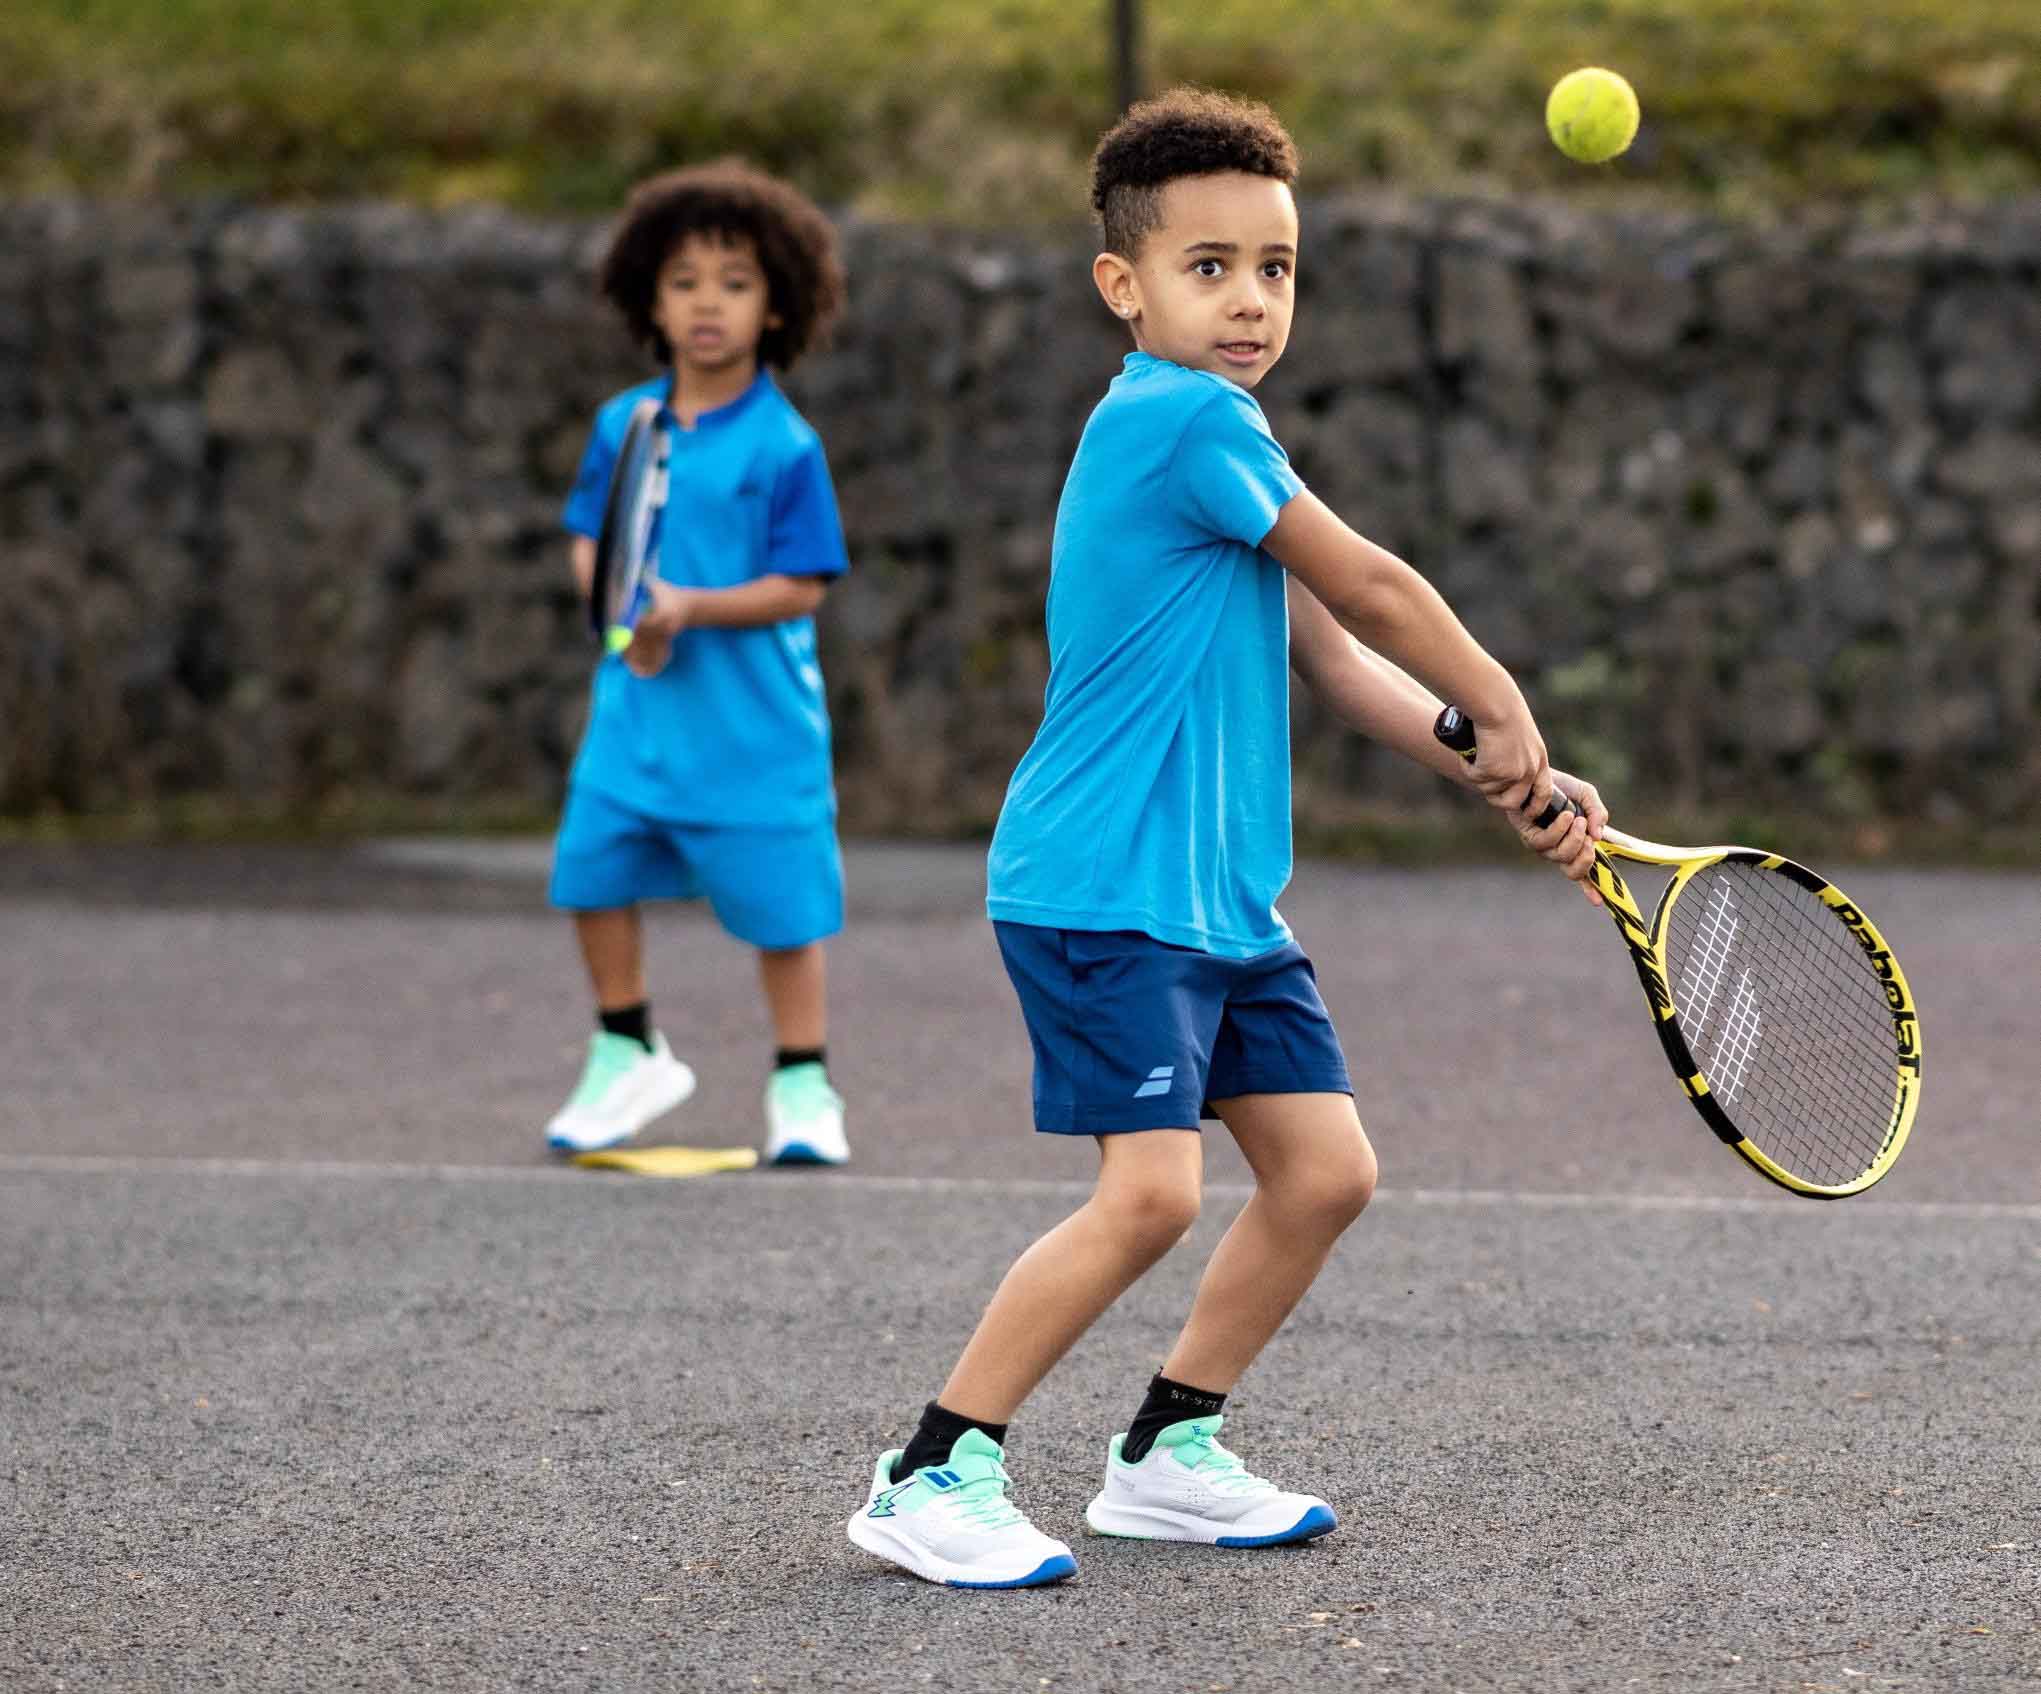 Papúa Nueva Guinea Destello Tiranía Los mejores tips para elegir raquetas para niños